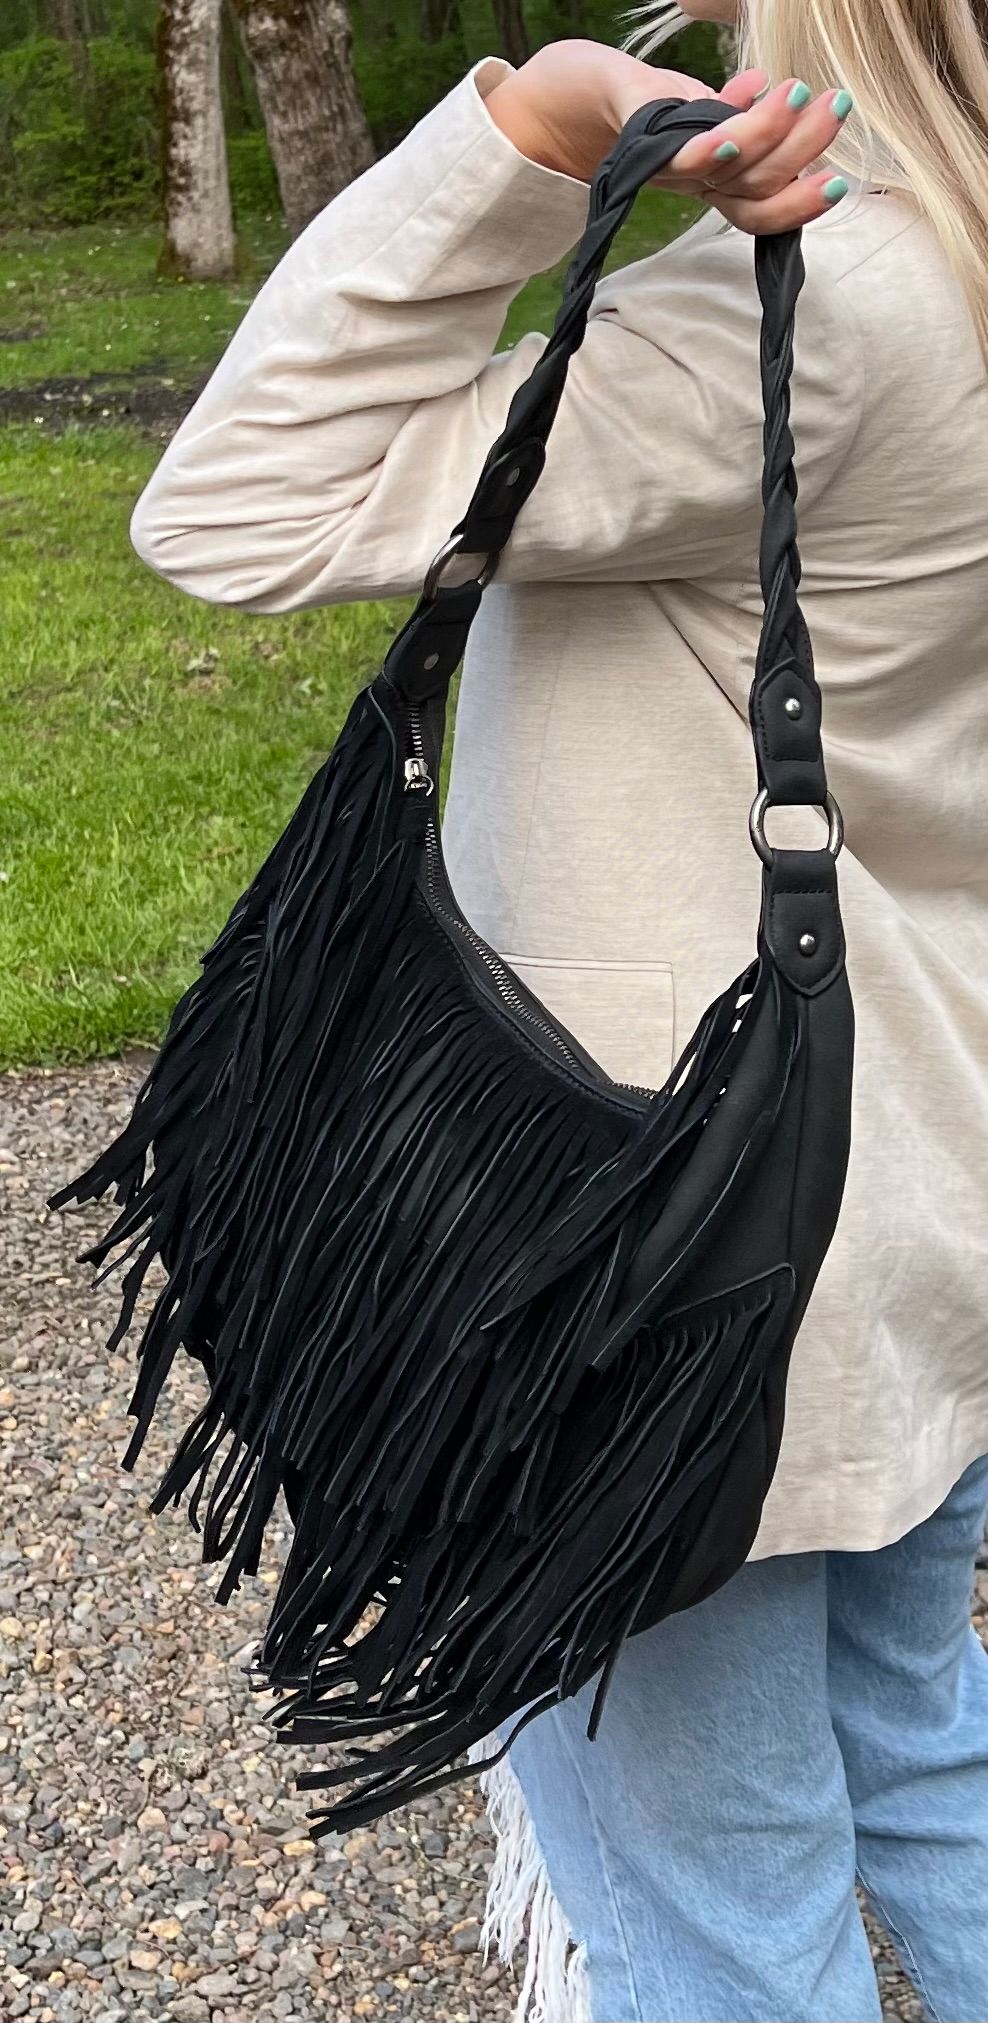 Wrangler Black Handbag with Fringe